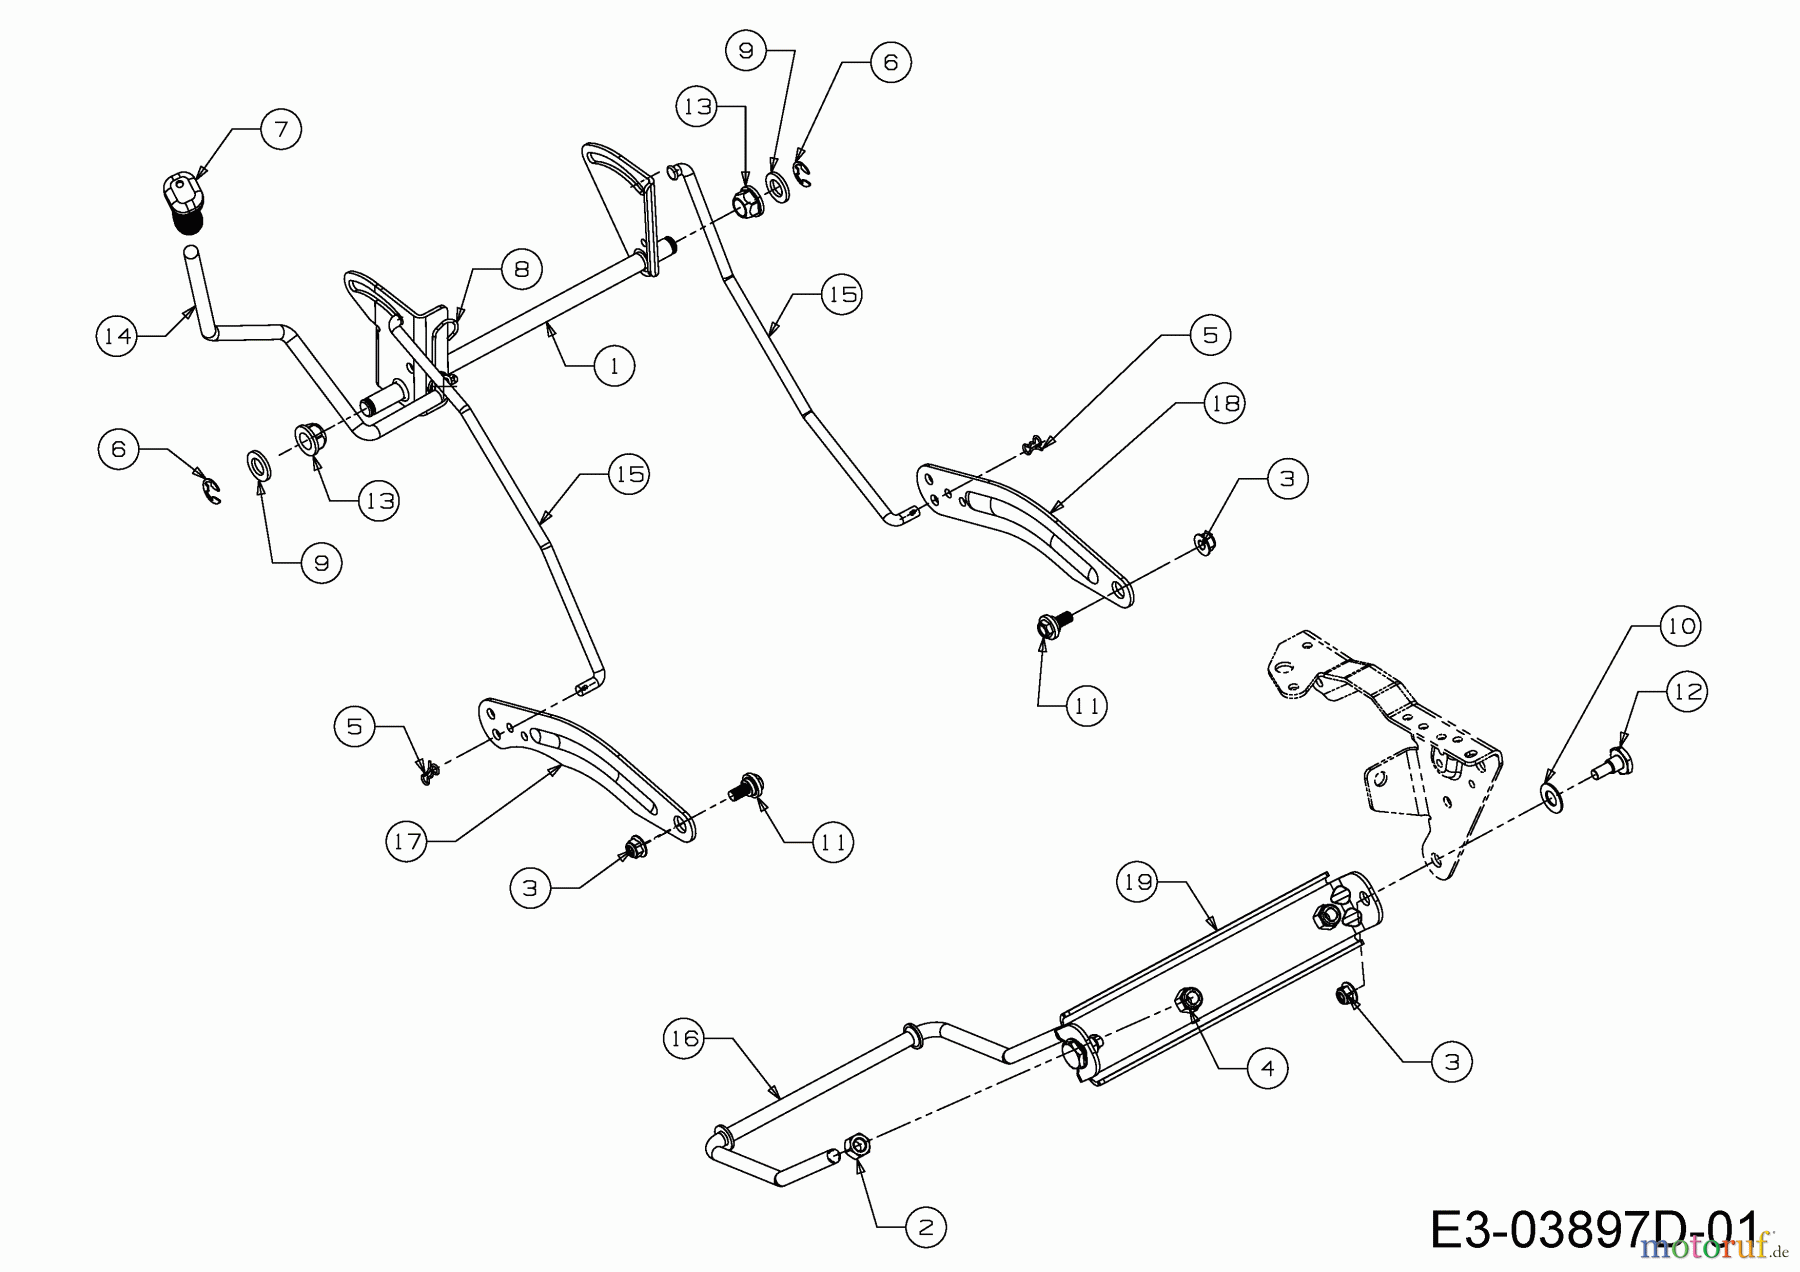  WOLF-Garten Expert Rasentraktoren E 13/92 T 13I2765E650  (2018) Mähwerksaushebung